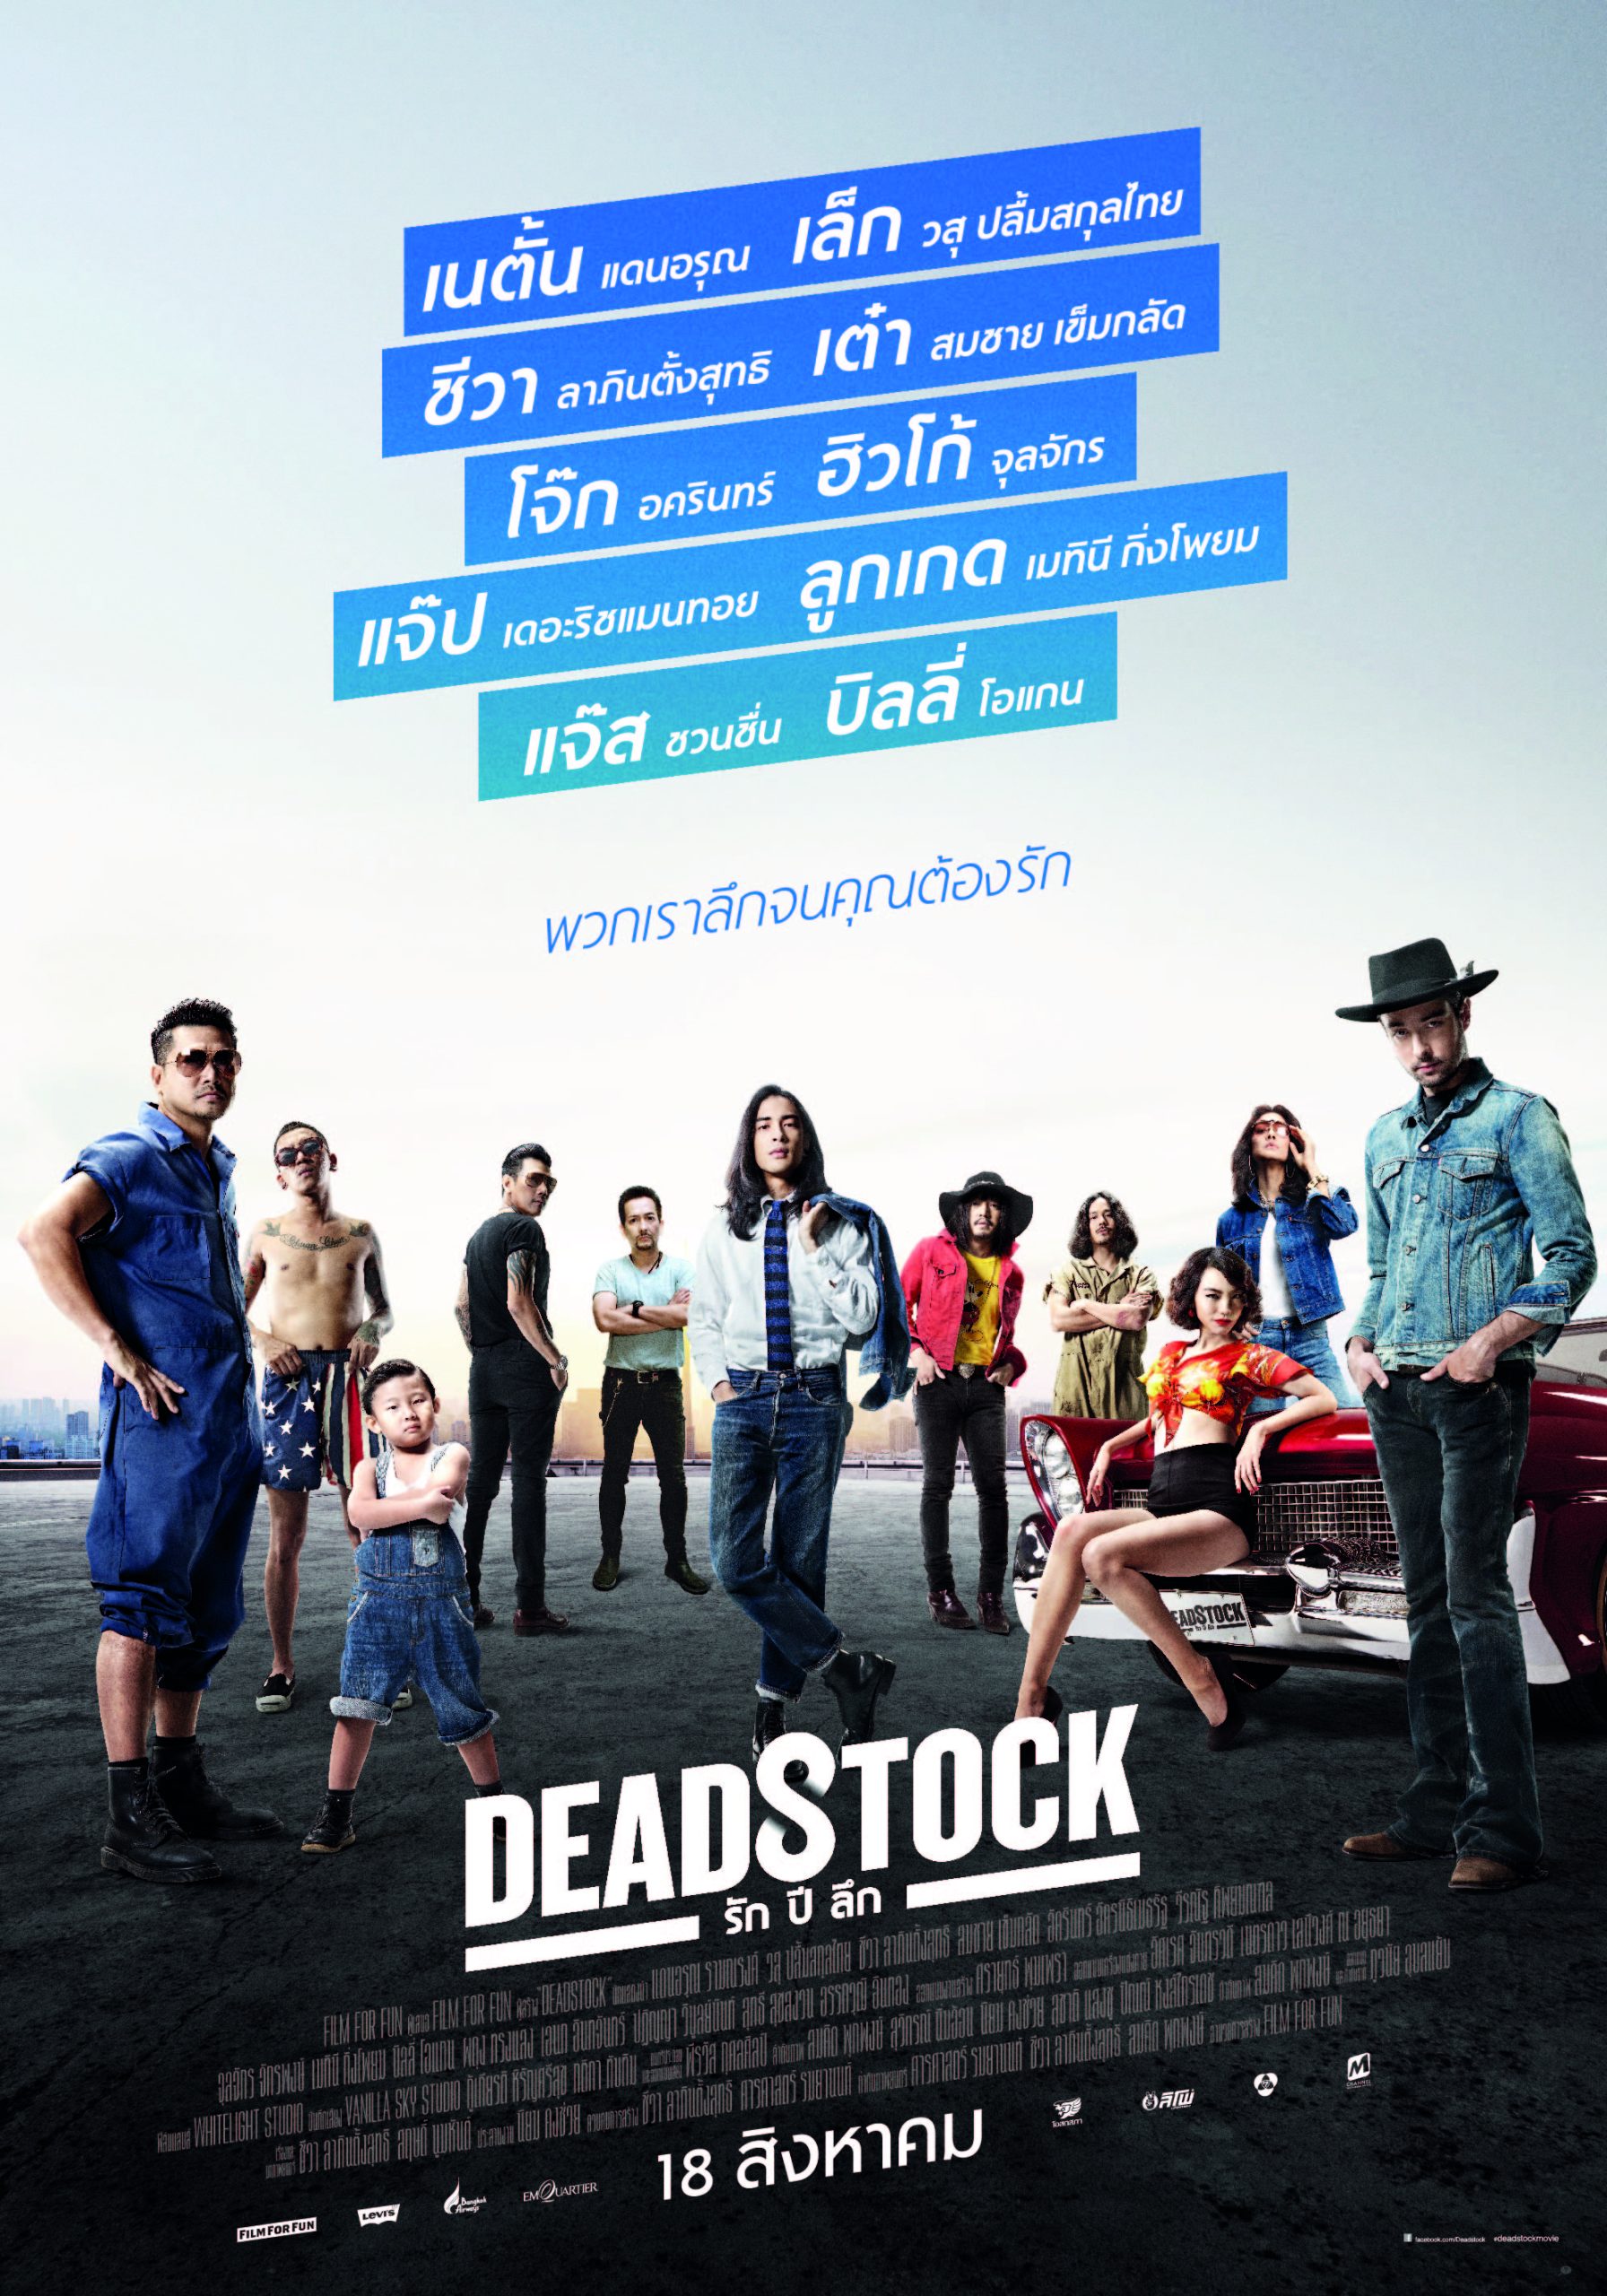 ดูหนังออนไลน์ฟรี Deadstock (2016) รัก ปี ลึก หนังเต็มเรื่อง หนังมาสเตอร์ ดูหนังHD ดูหนังออนไลน์ ดูหนังใหม่